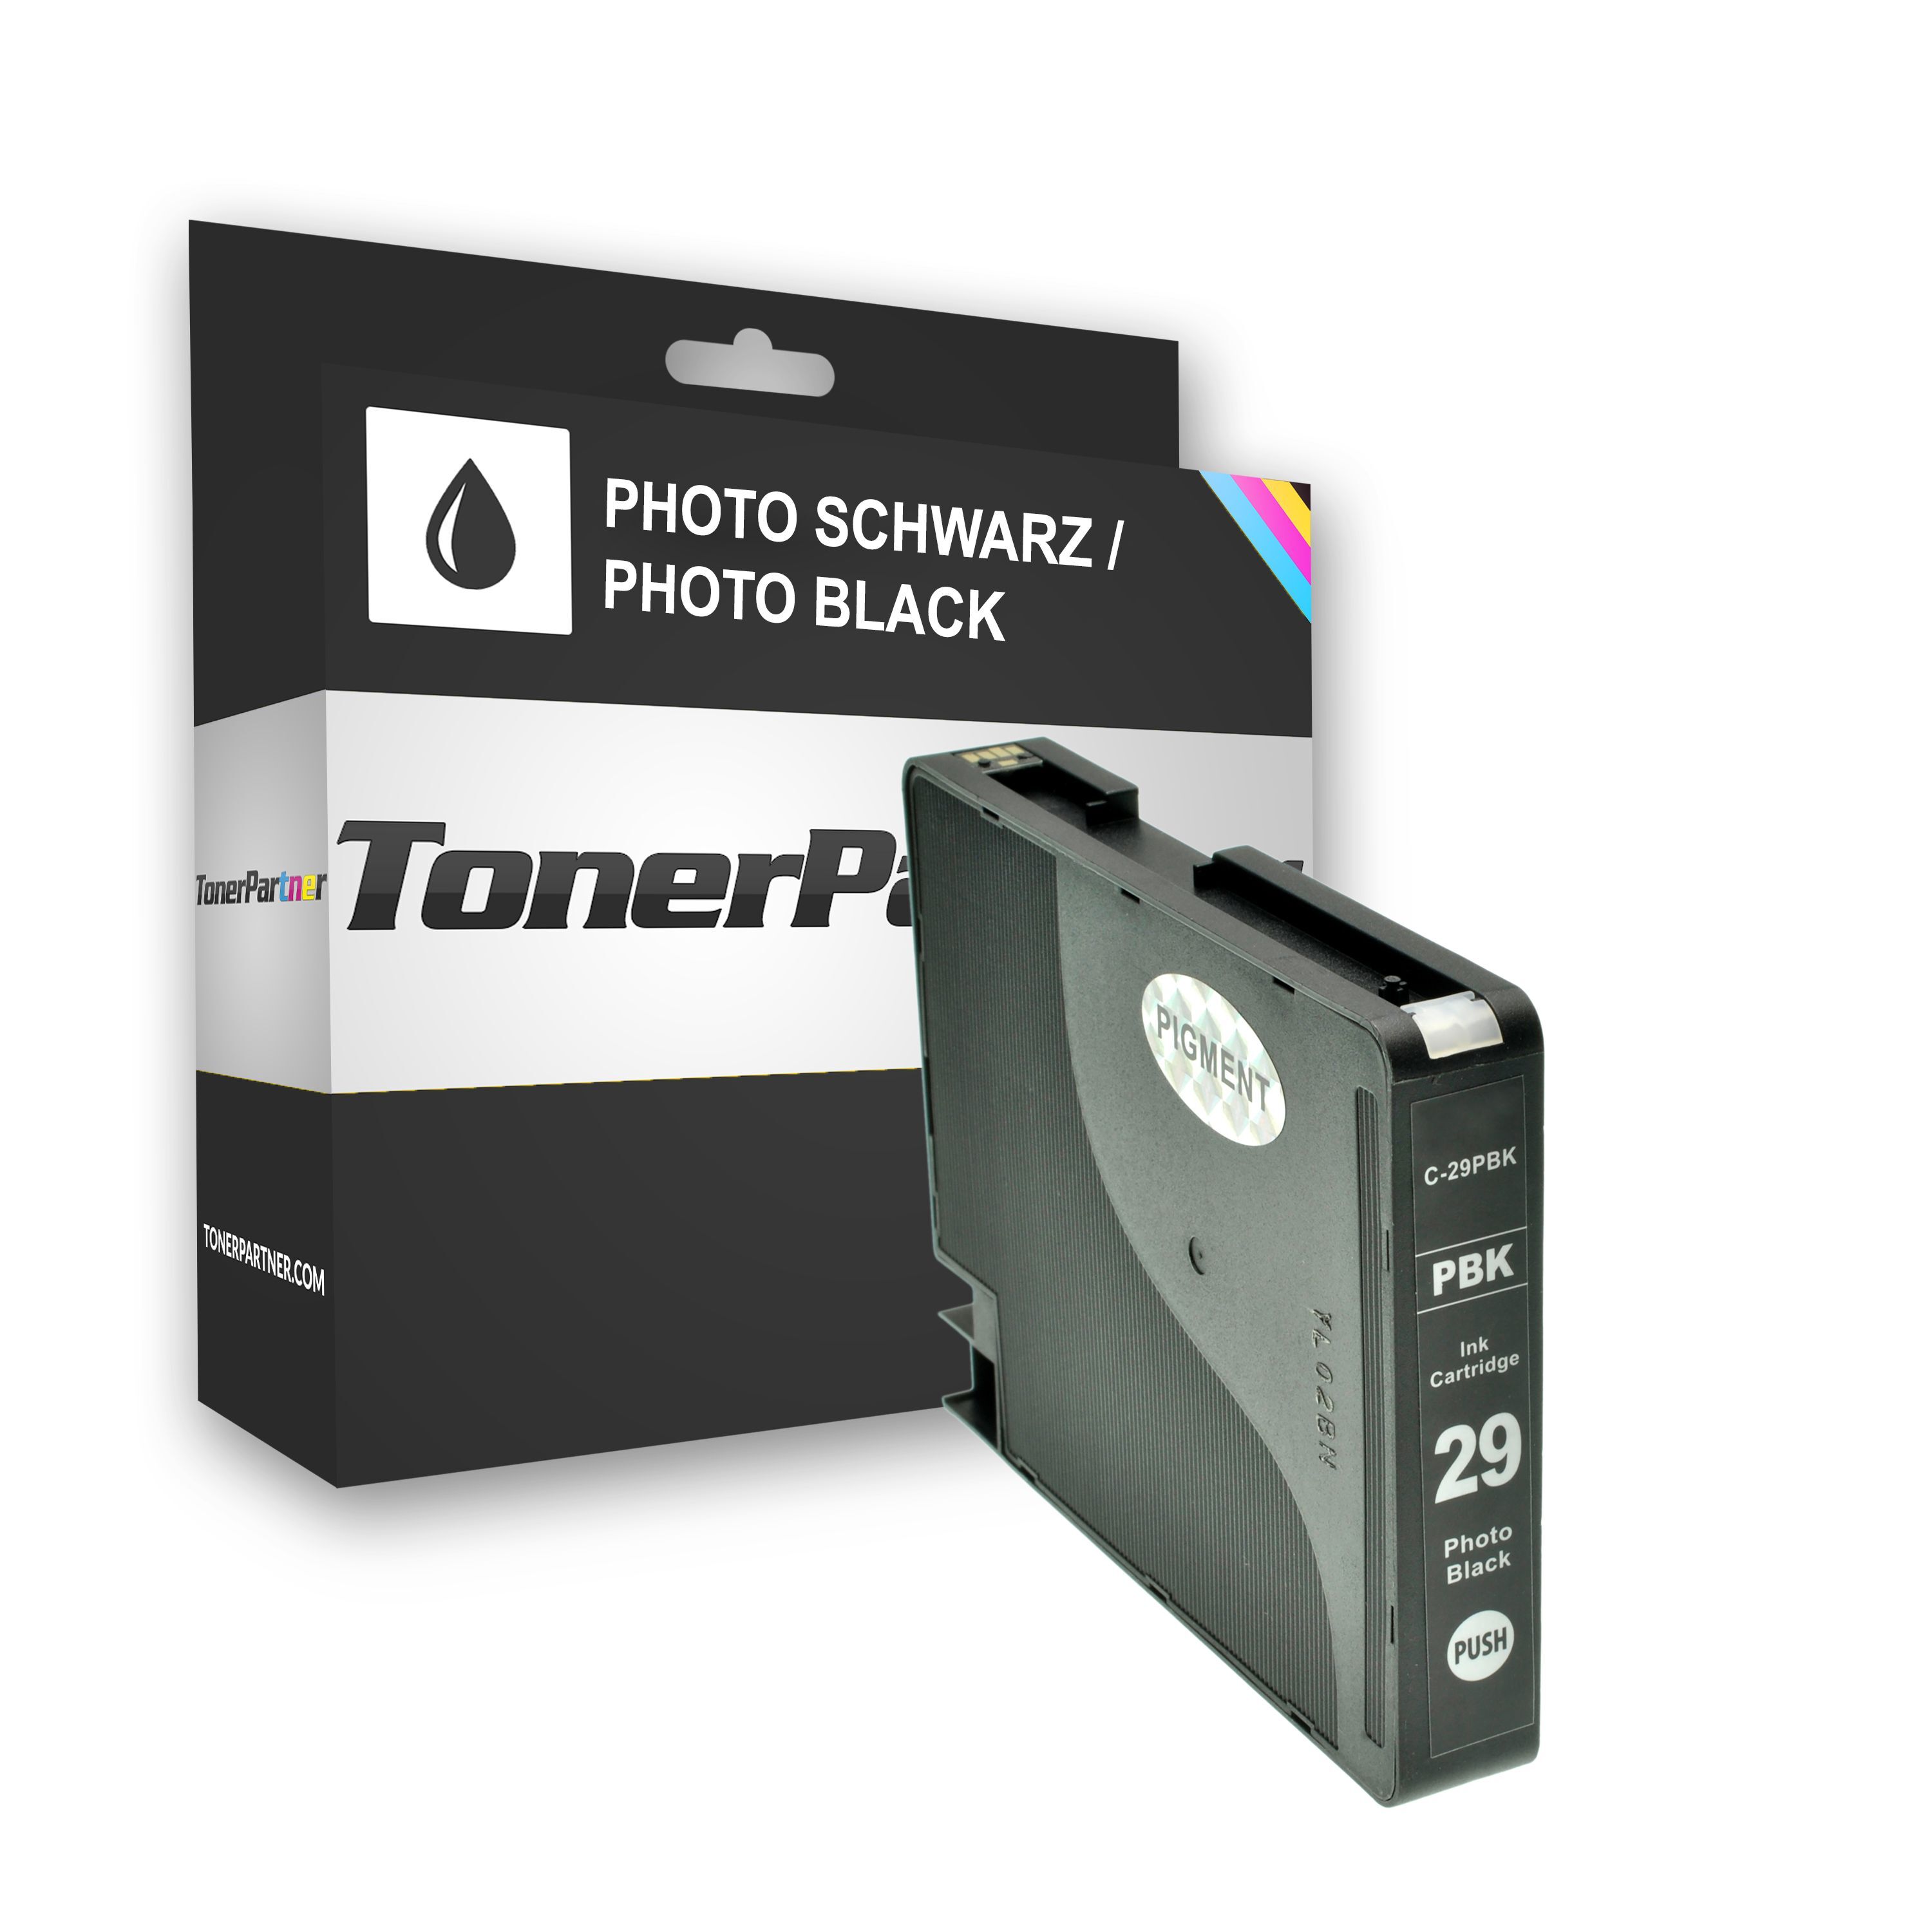 TonerPartner Compatible avec Canon 4869 B 001 / PGI-29 PBK cartouche d'encre photonoir, 1 300 pages, 1,08 centimes par page, contenu: 36 ml de TonerPartner